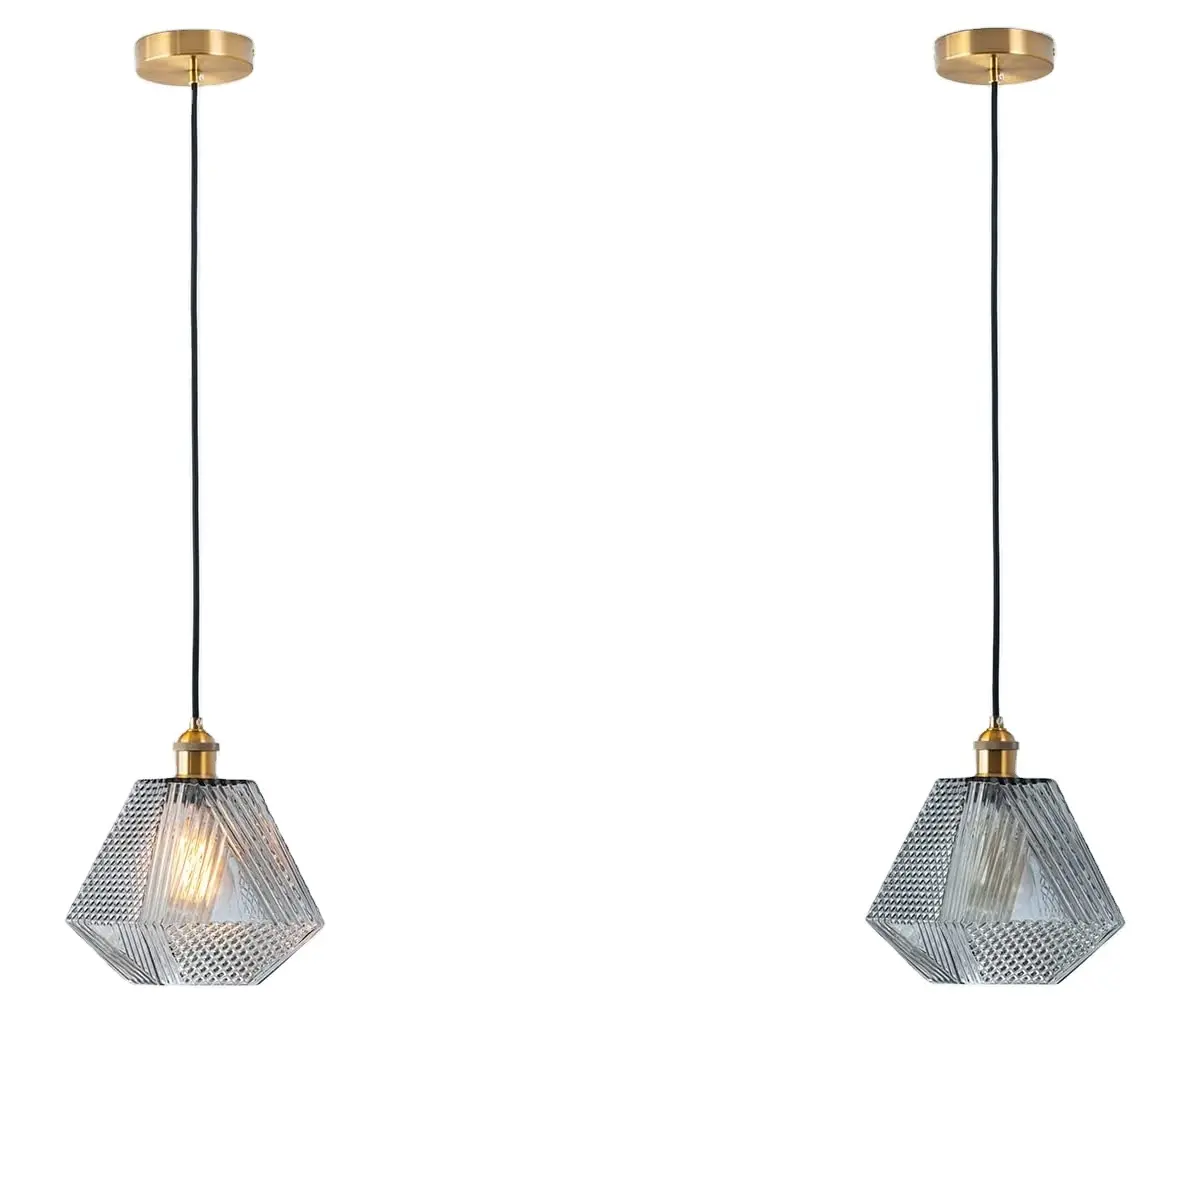 Lámpara colgante de cristal de estilo vintage, accesorio de iluminación moderno, color gris y dorado, para granja